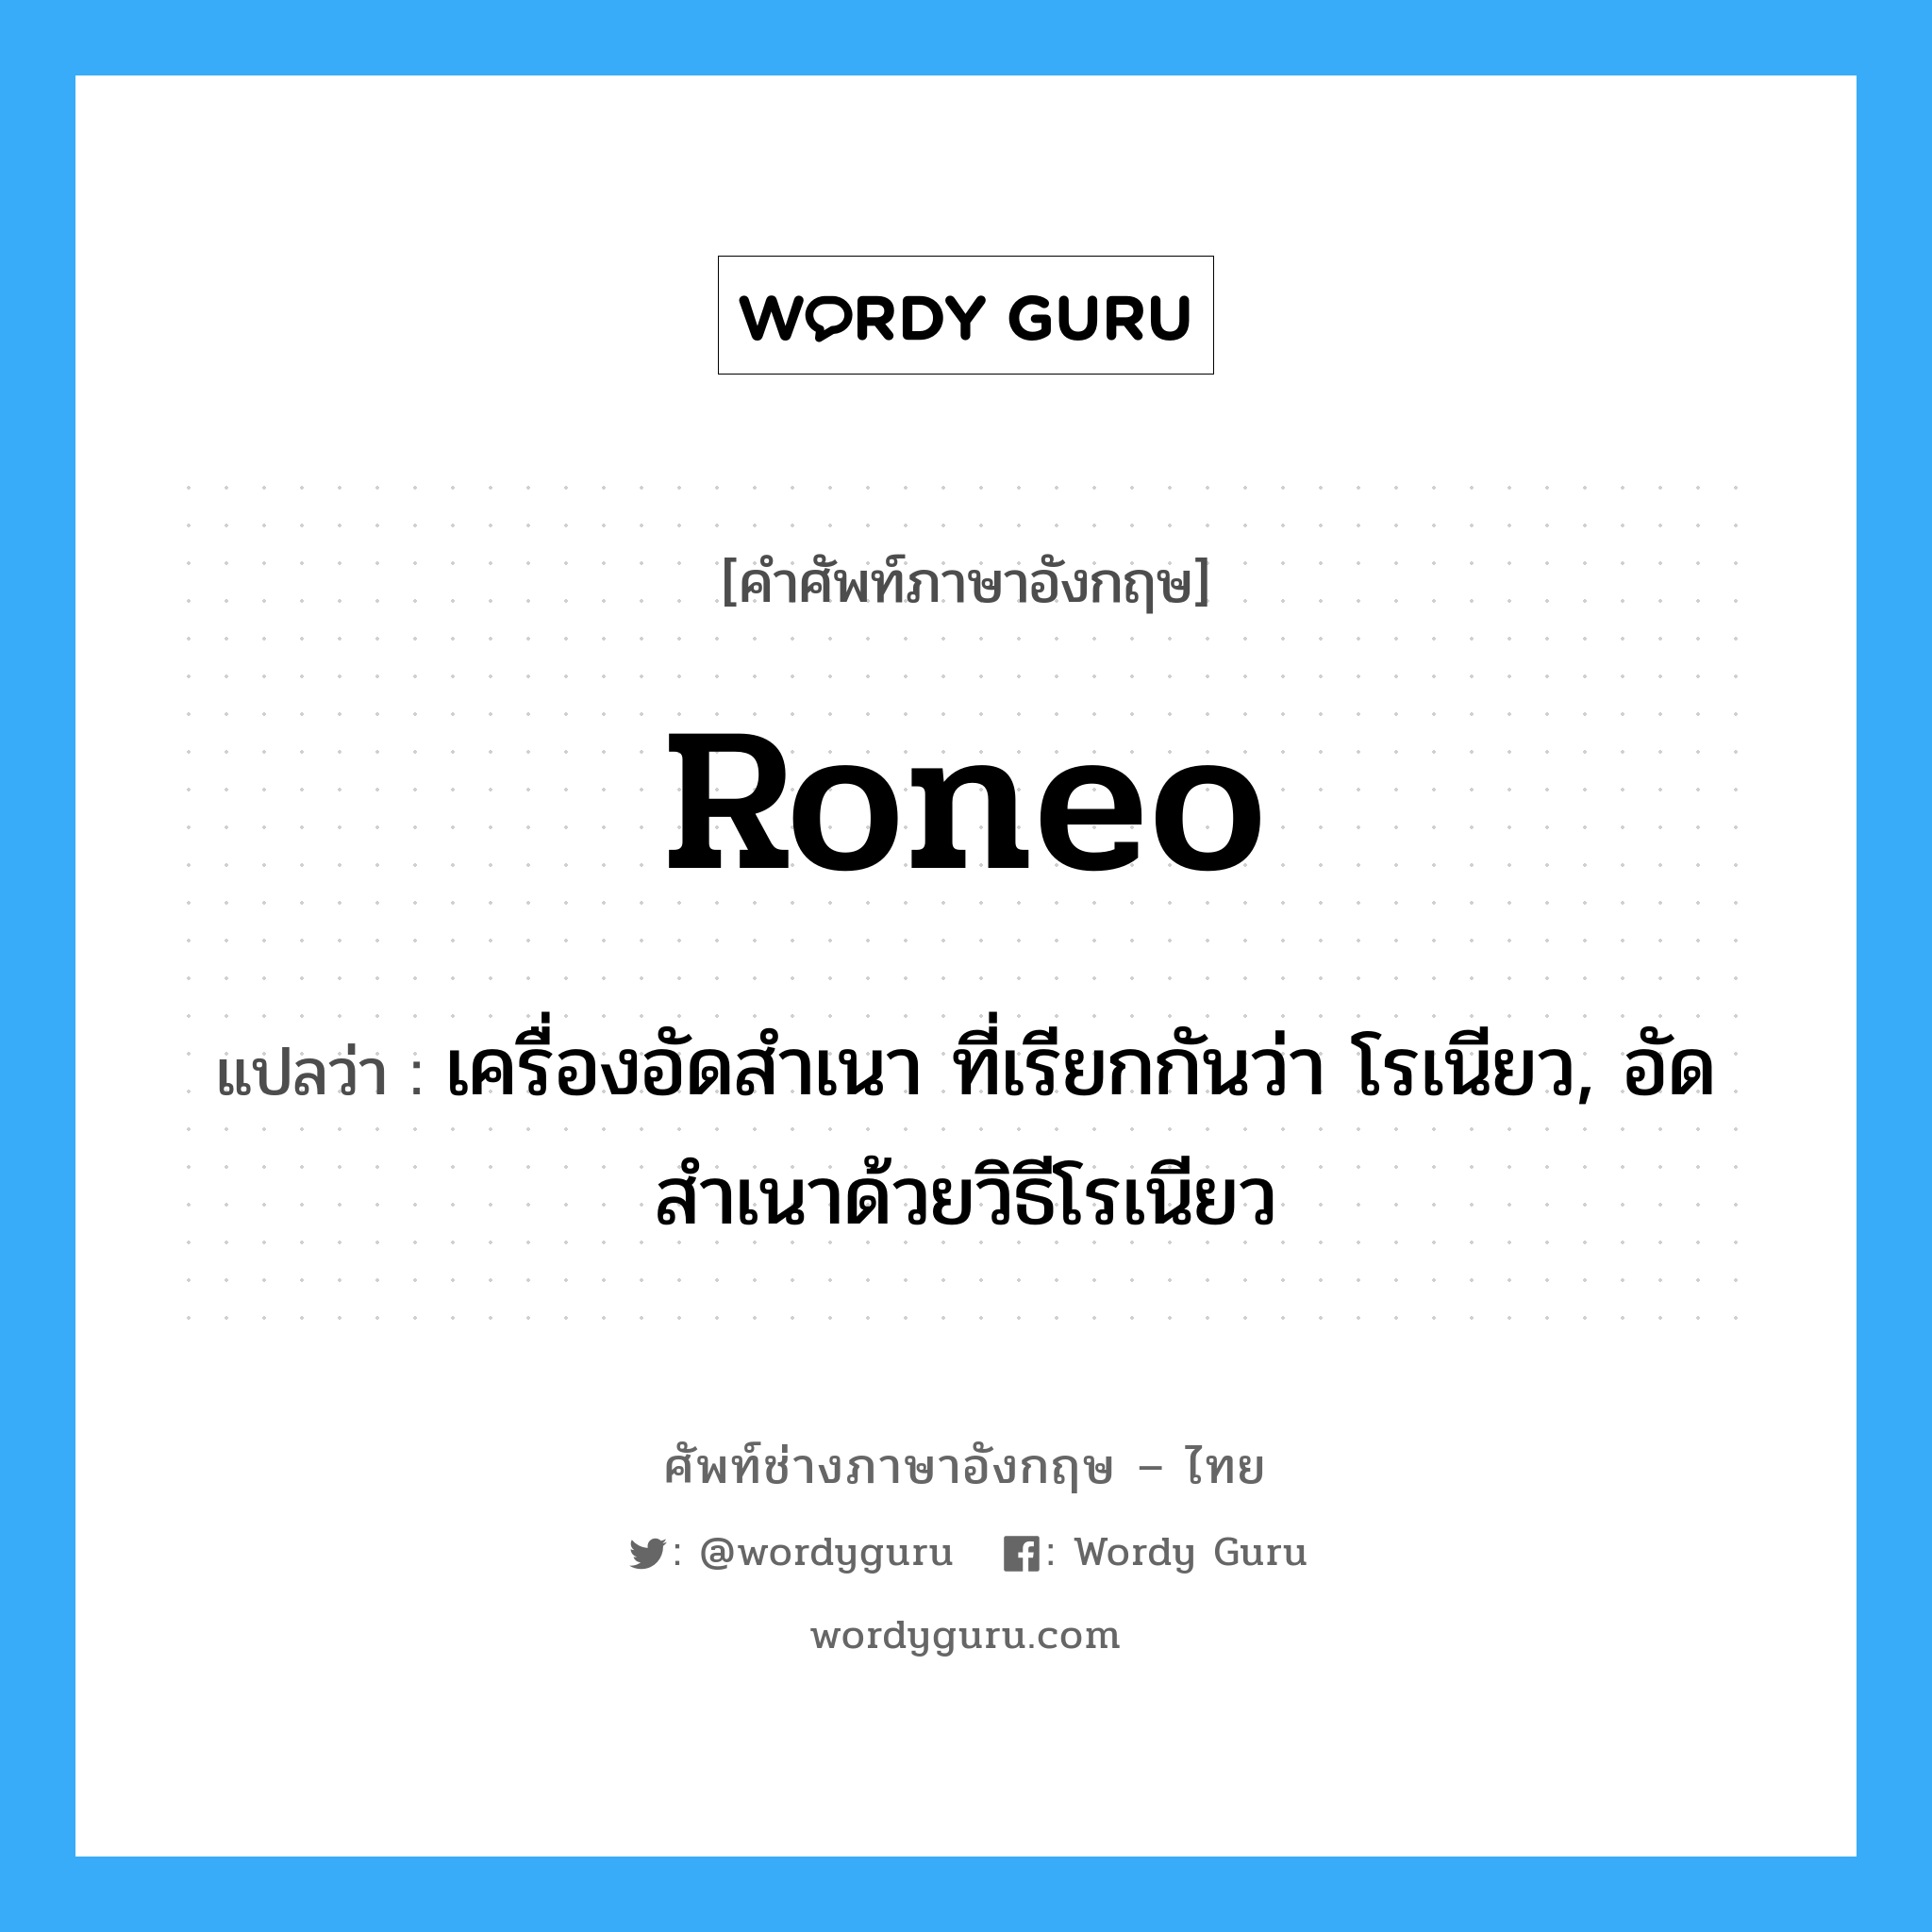 Roneo แปลว่า? | Wordy Guru